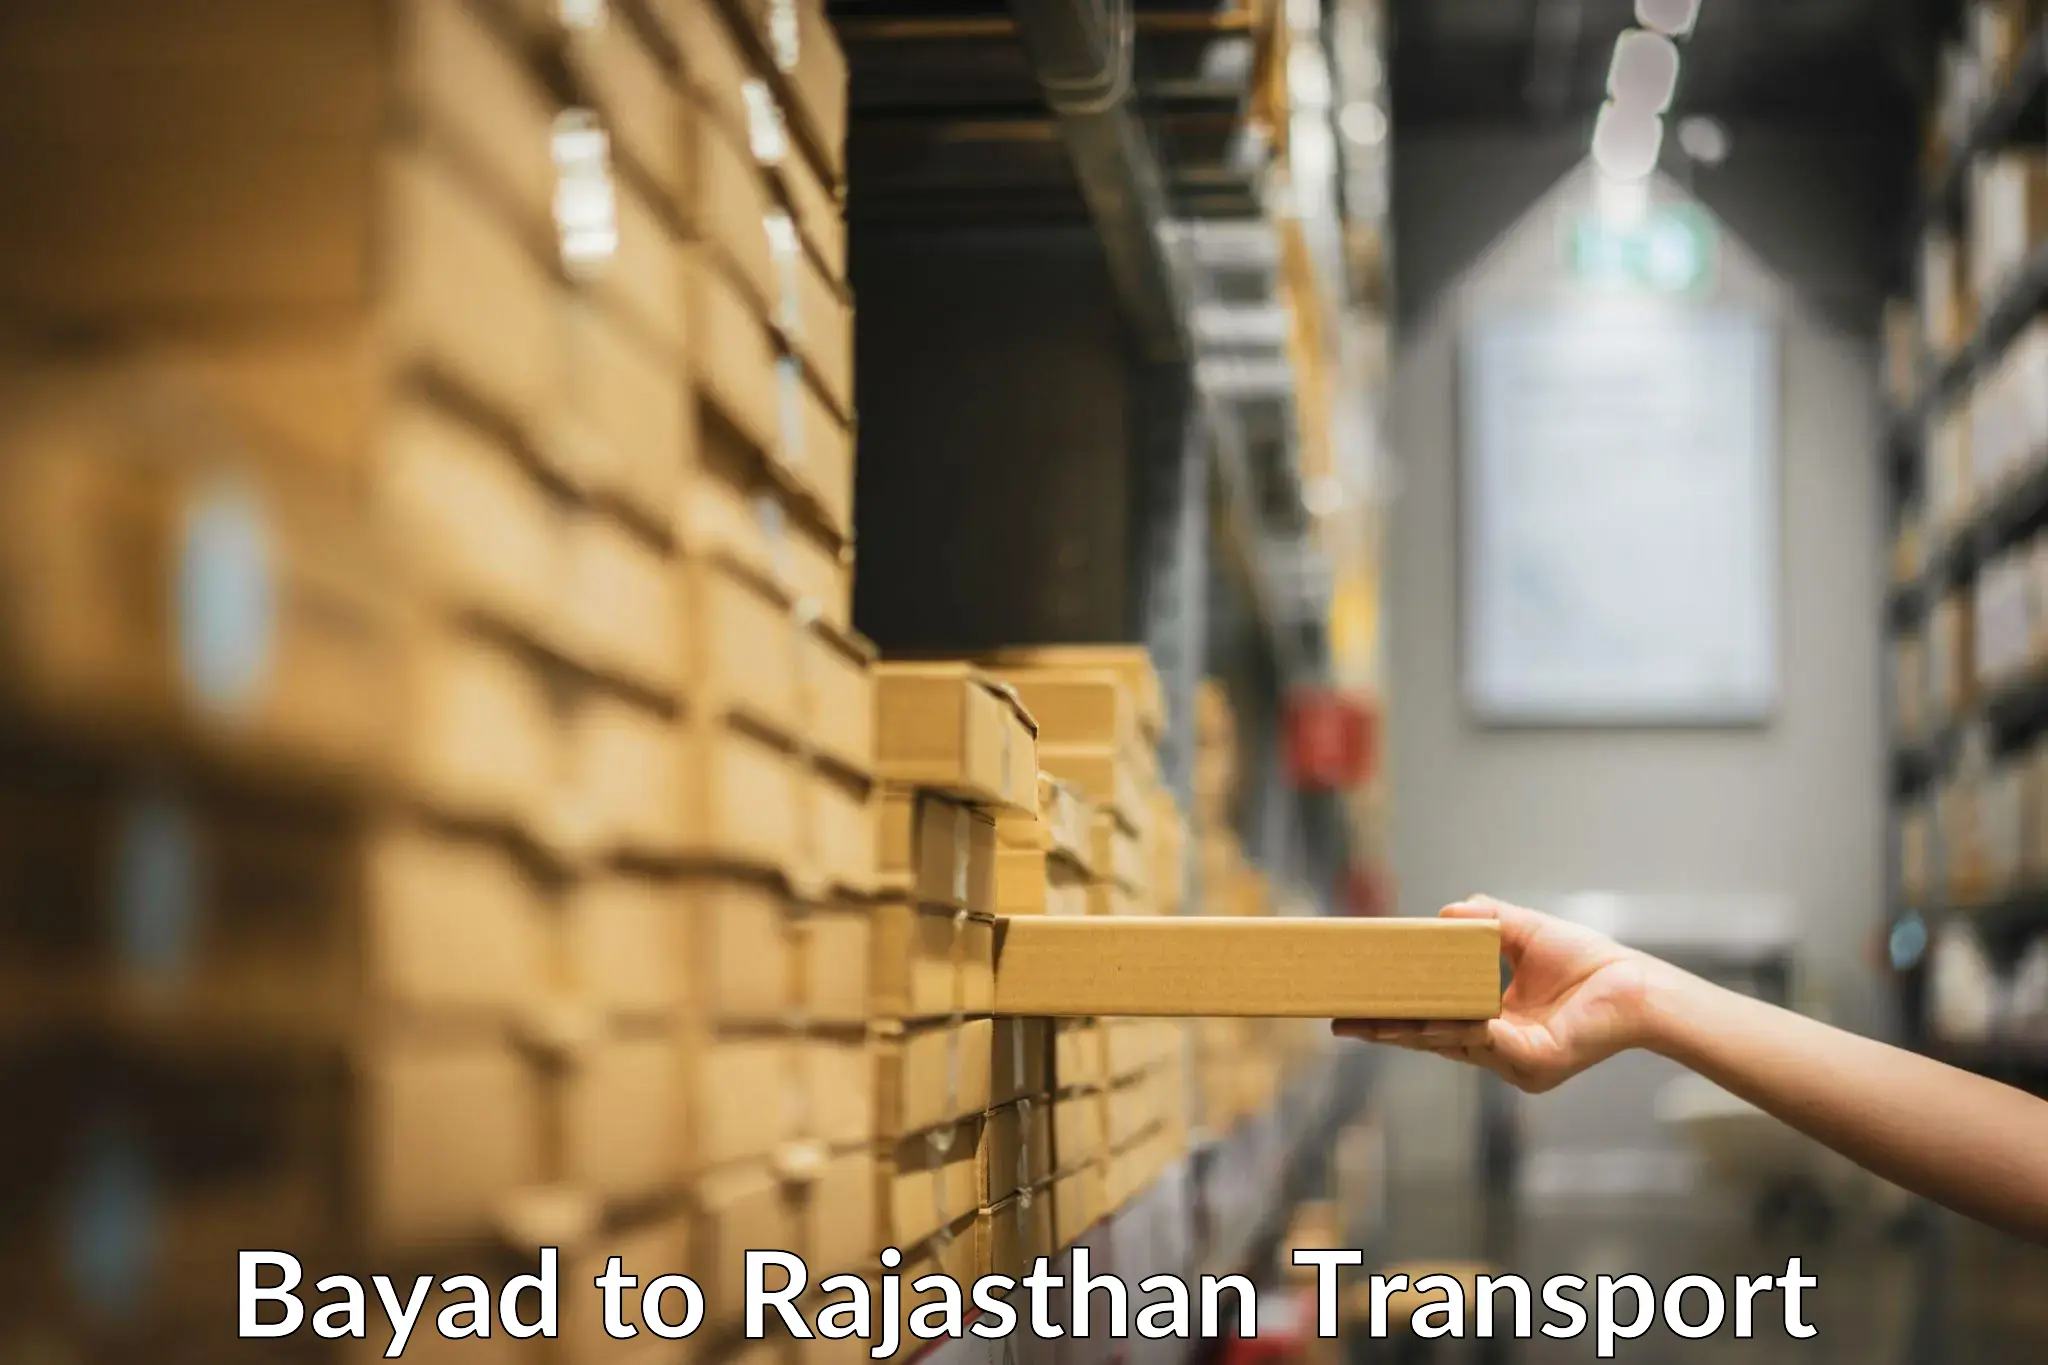 Shipping partner Bayad to Jalore